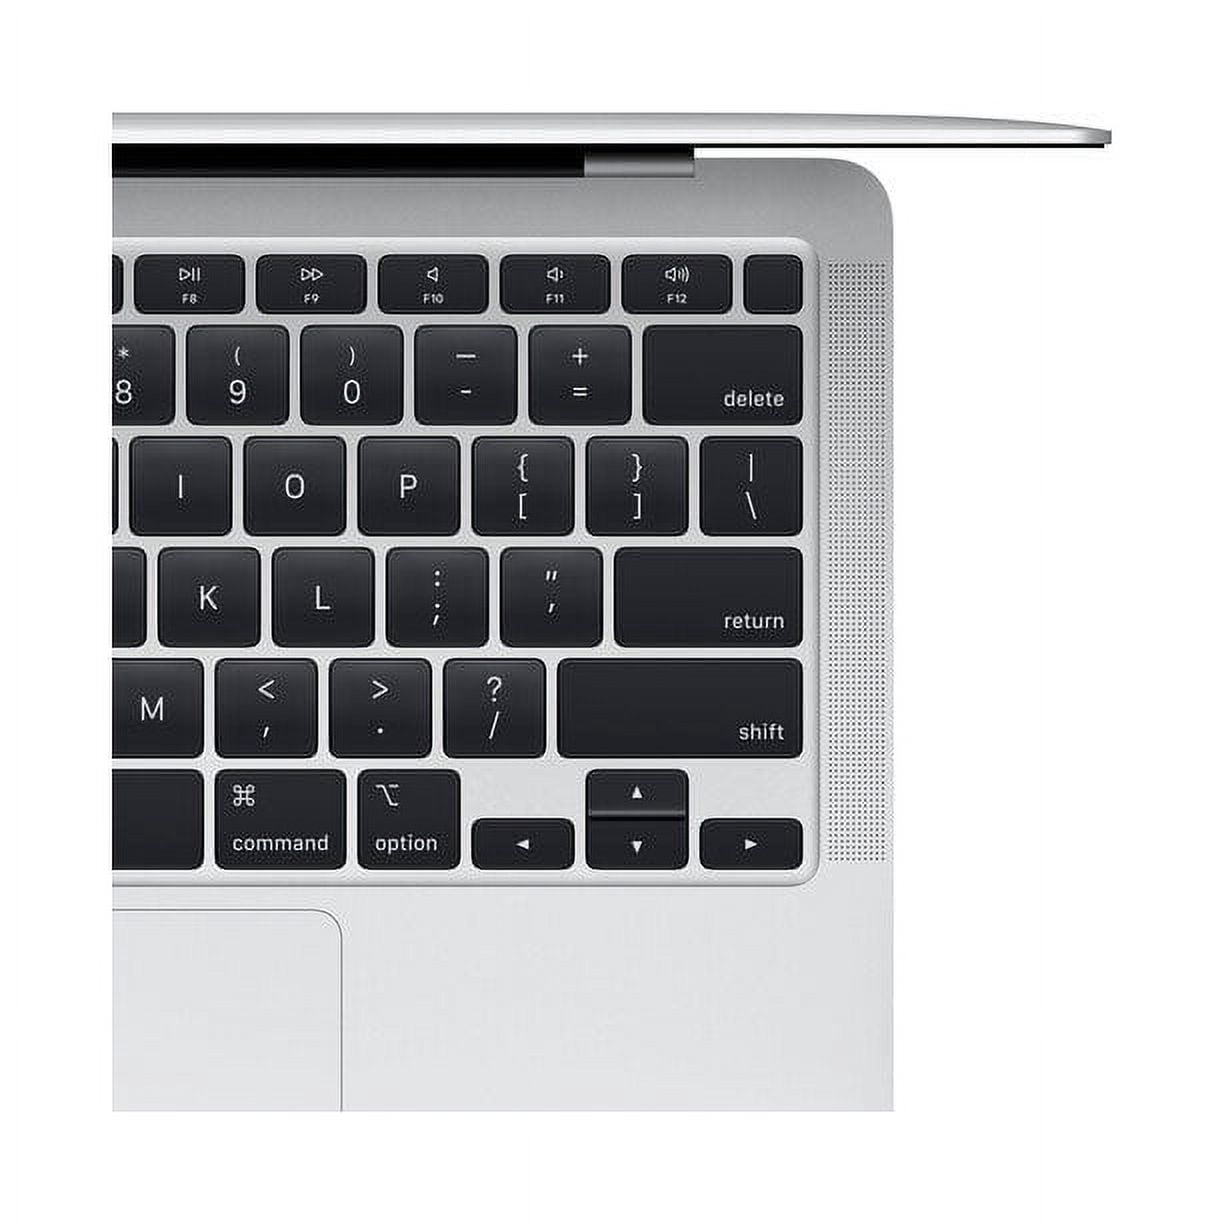 Apple Macbook Air M1 2020 MGN63LL/A 13.3 inch TouchBar Late 2020